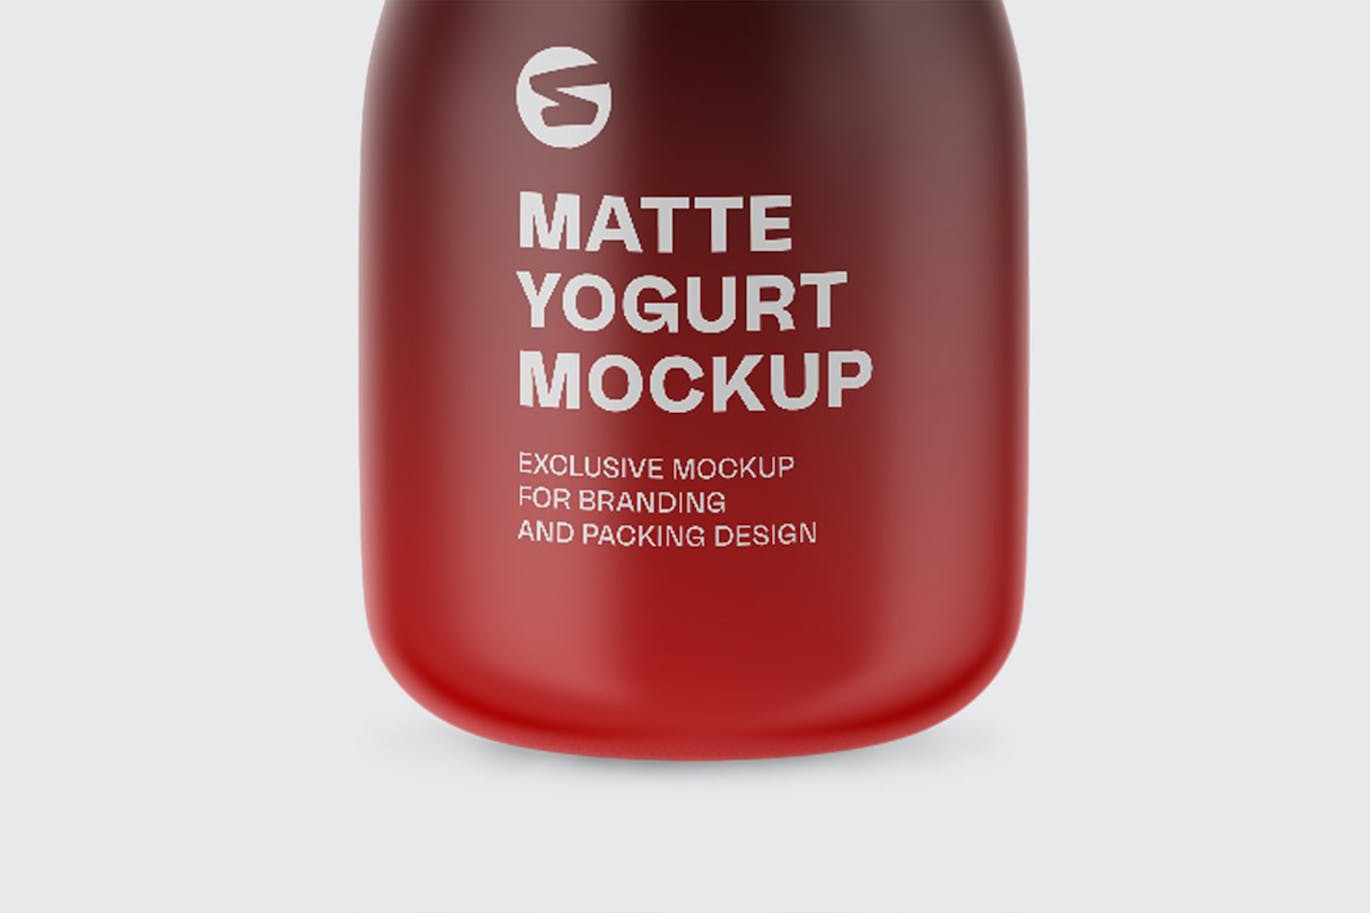 哑光酸奶瓶包装设计样机 Matte Yogurt Bottle Mockup 样机素材 第6张